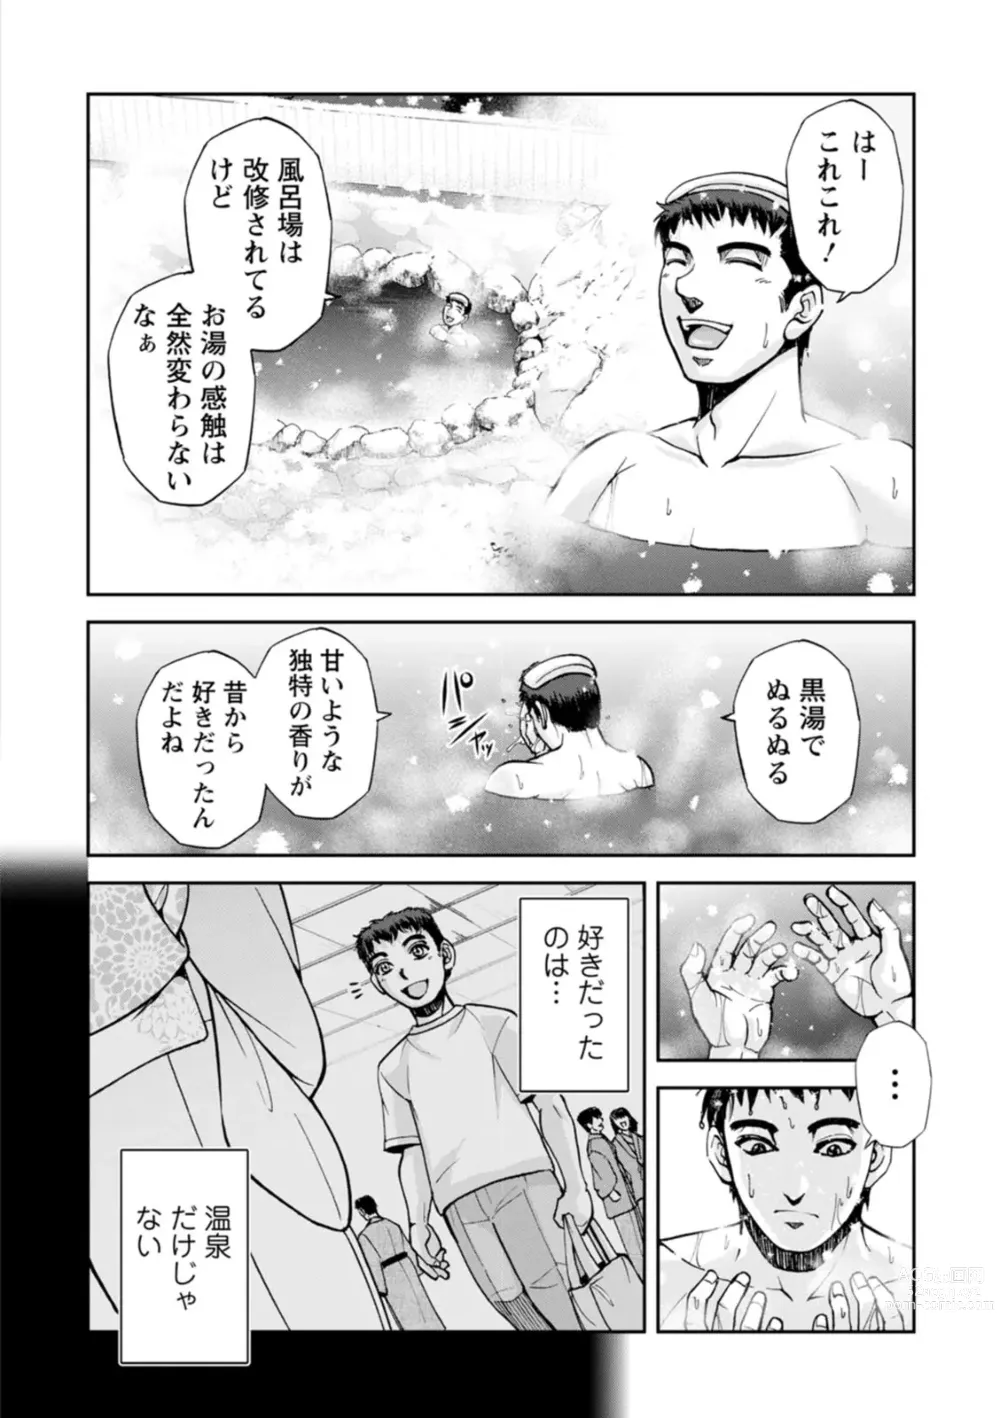 Page 10 of manga Okami no Touko-san - Miss. Touko, a Landlady of a Hot spring inn